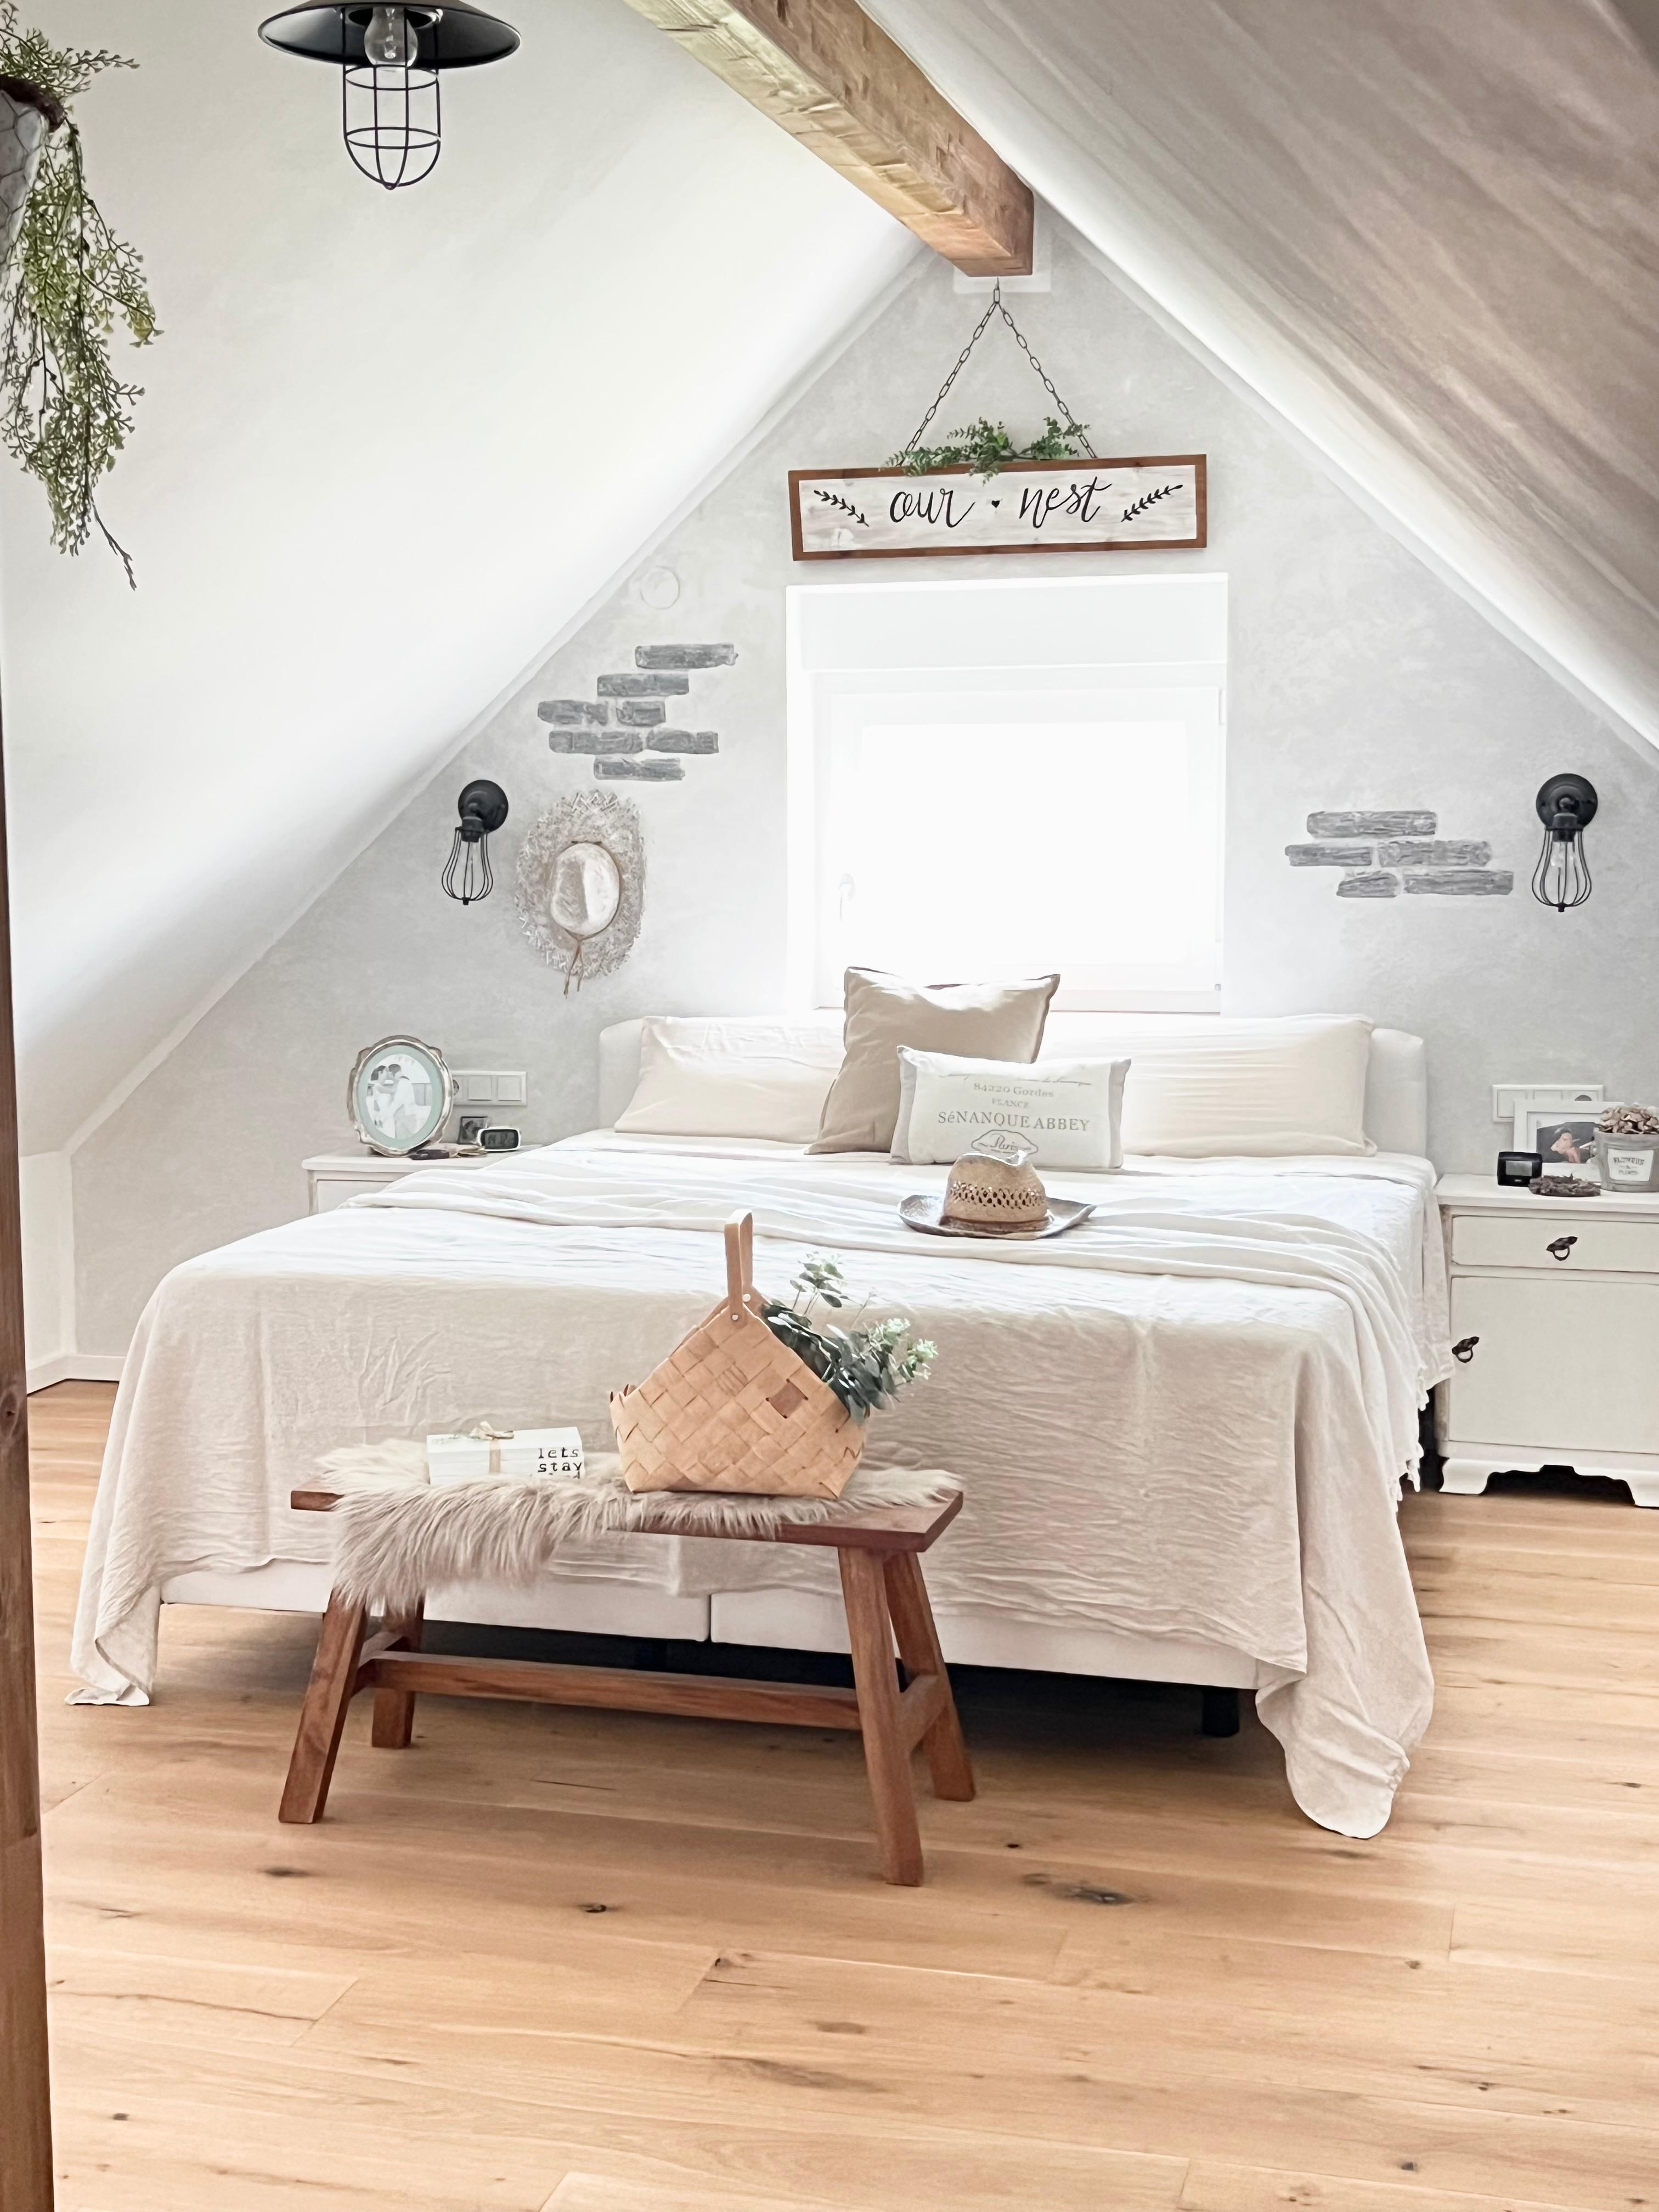 Gemütliches sommerliches Schlafzimmer im Boho Style 🥰
#couchstyle #boho #vintage #cozy #bedroom #schlafzimmer #sommer